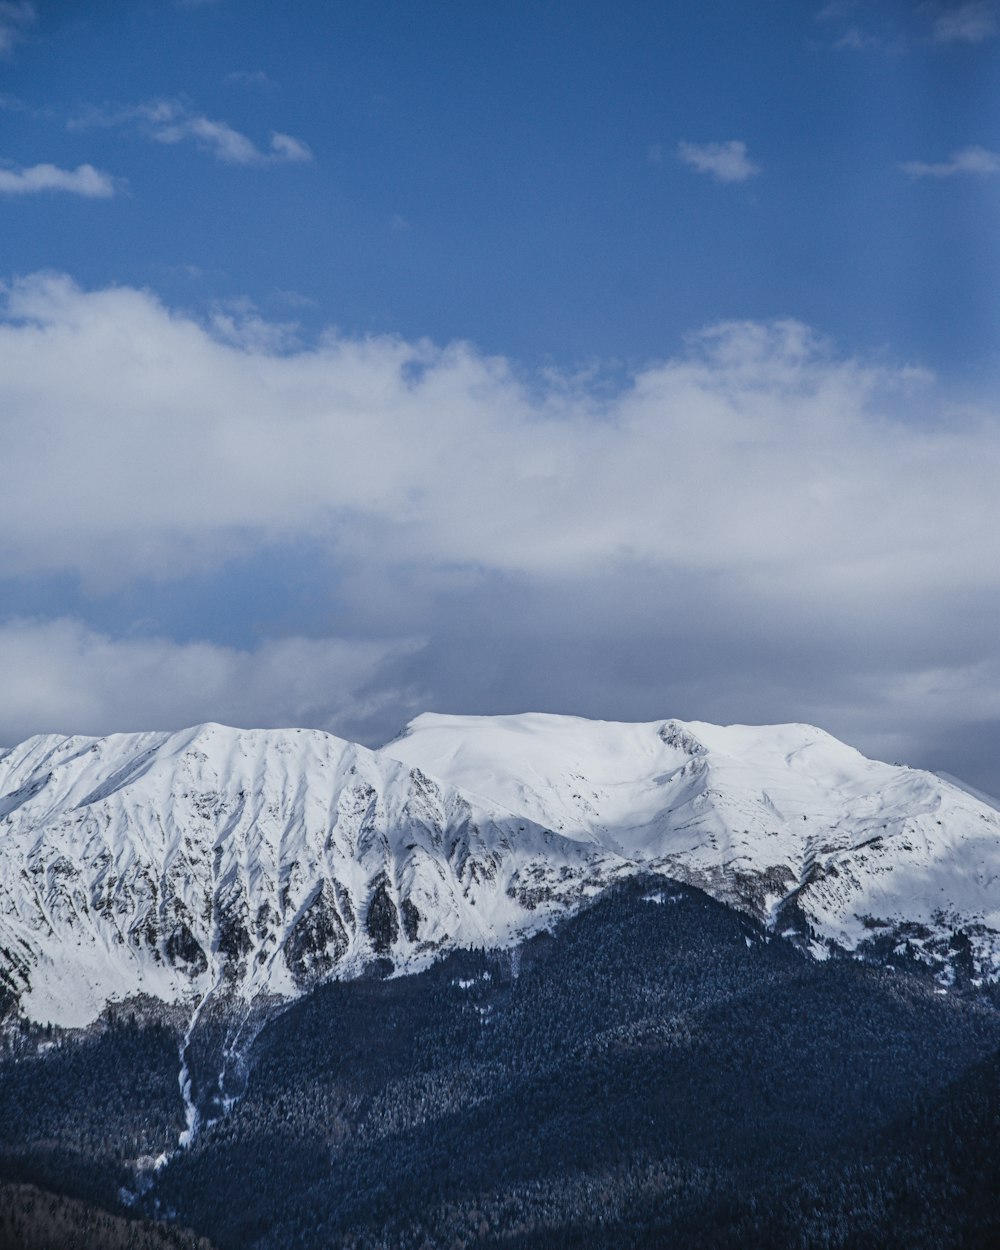 fotografia aérea do cume da montanha coberta com neve sob o céu branco e azul